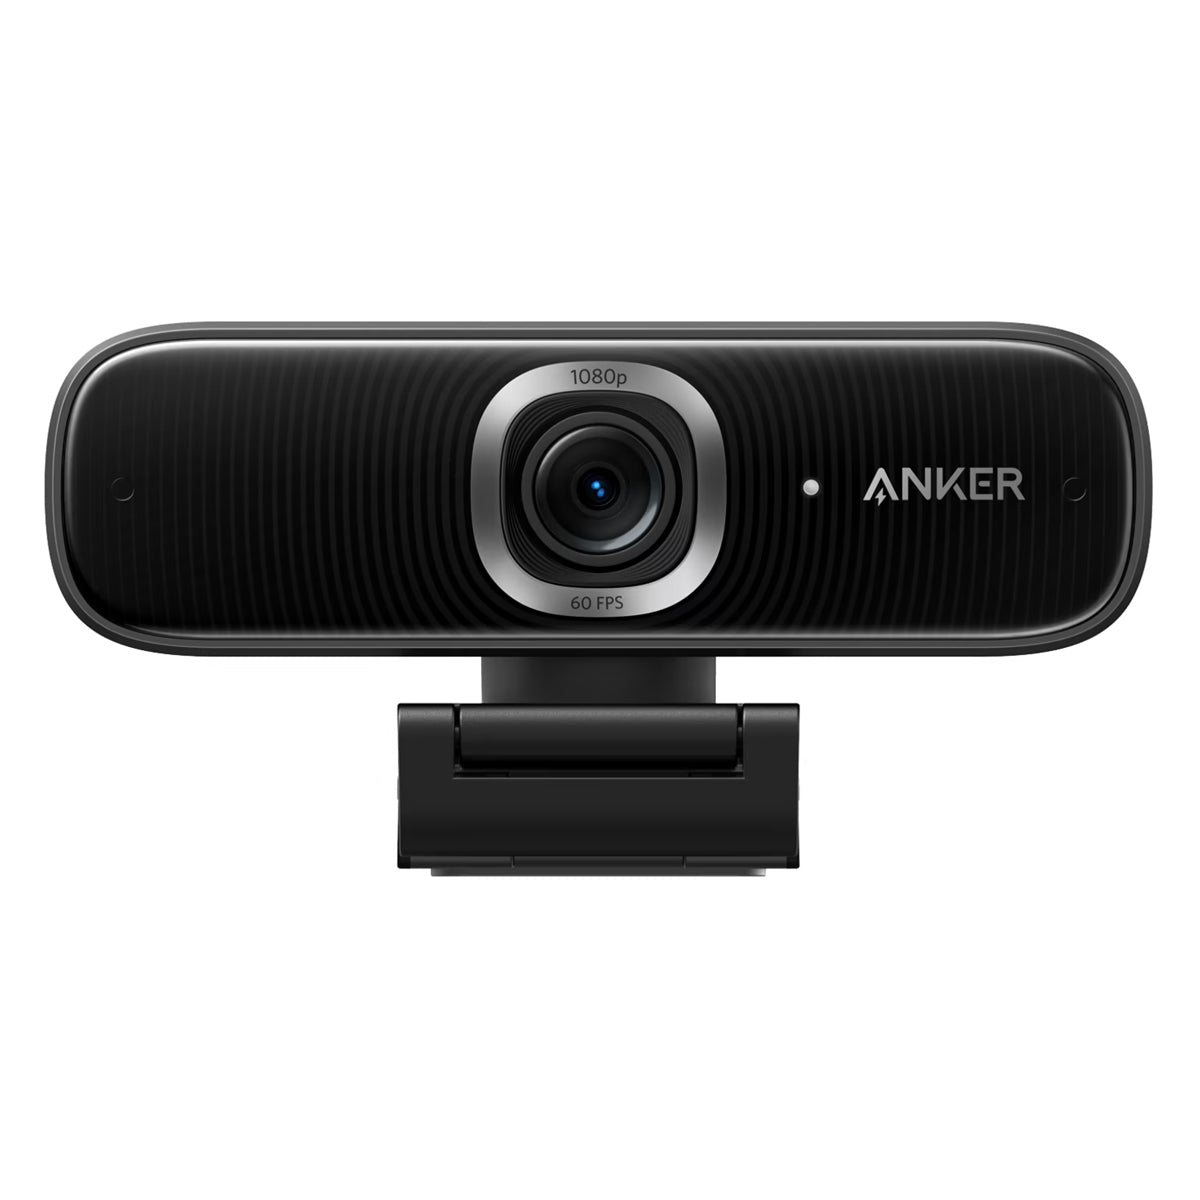 Anker PowerConf C300 網路攝影機